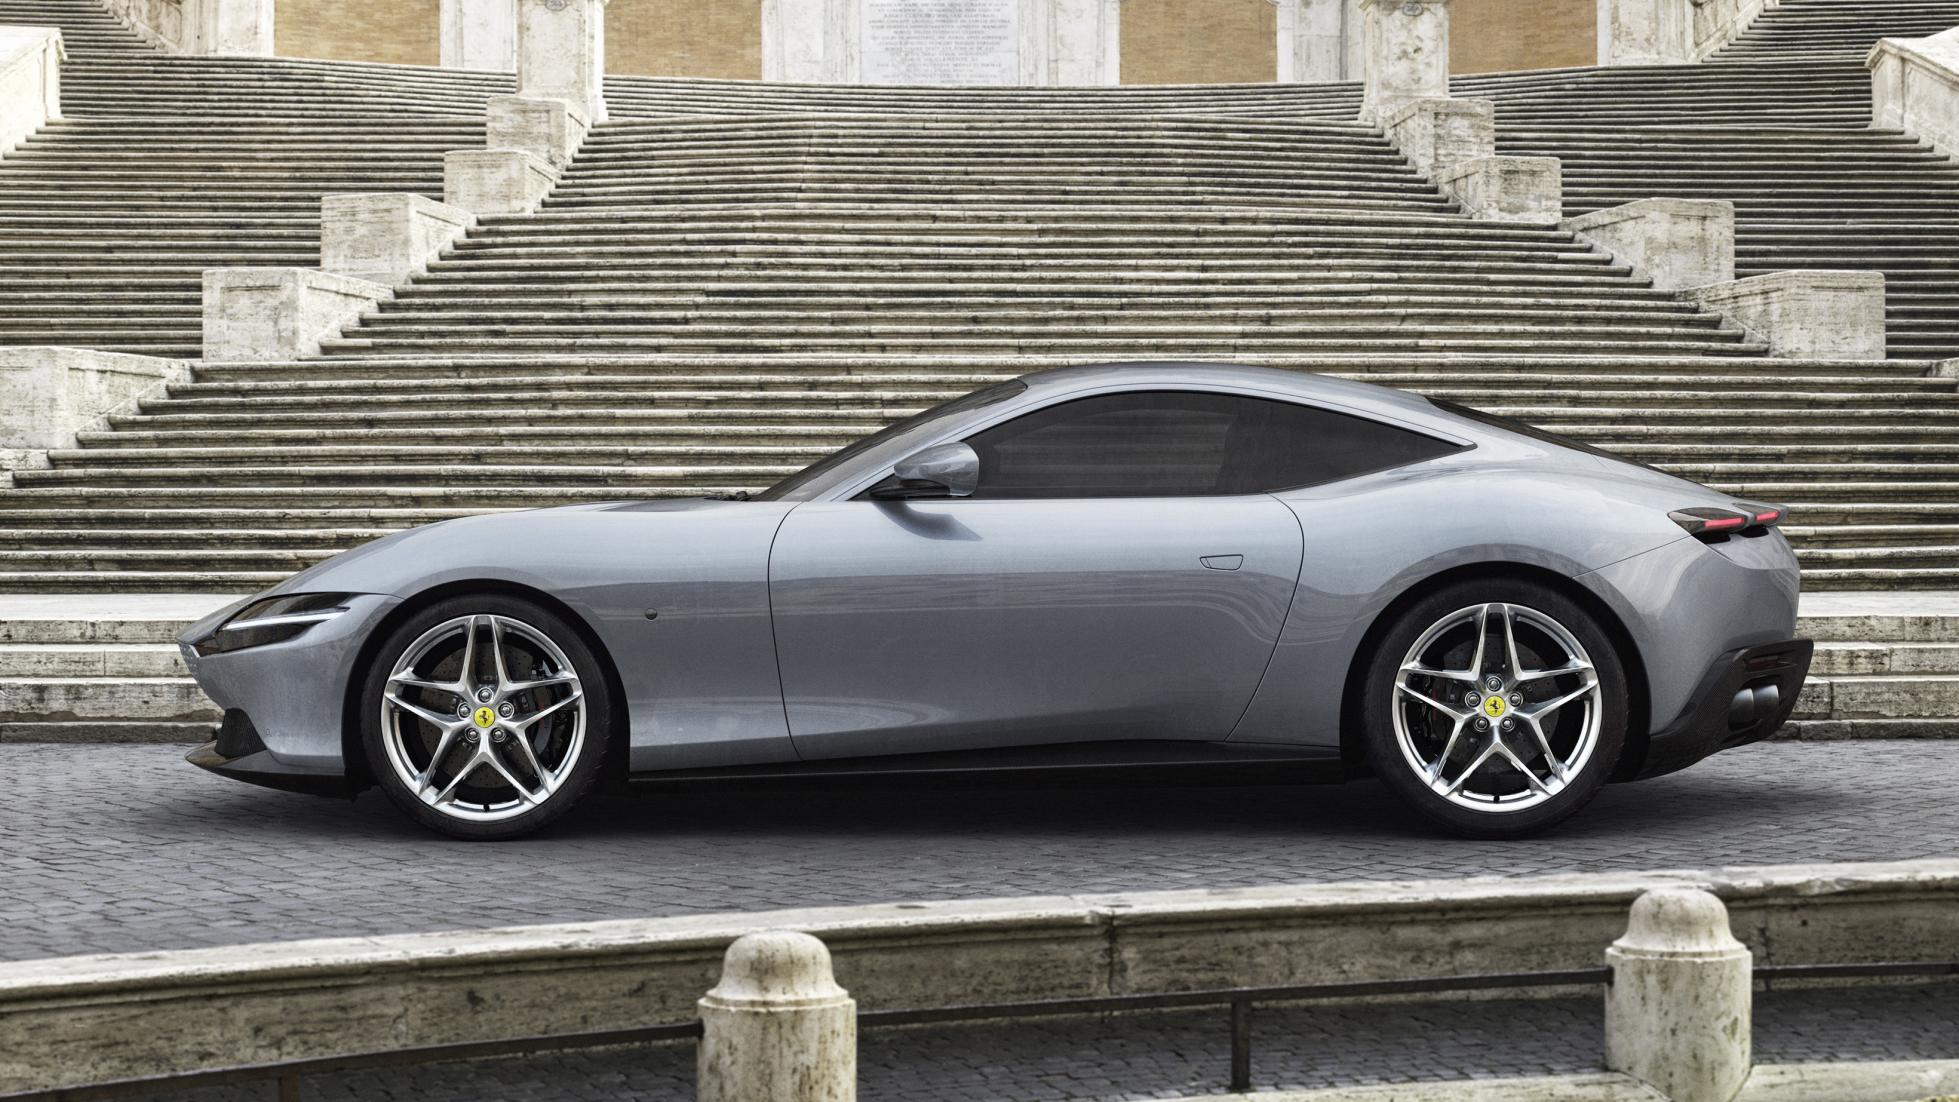 The new Ferrari Roma is an Aston Martin Vantage killer